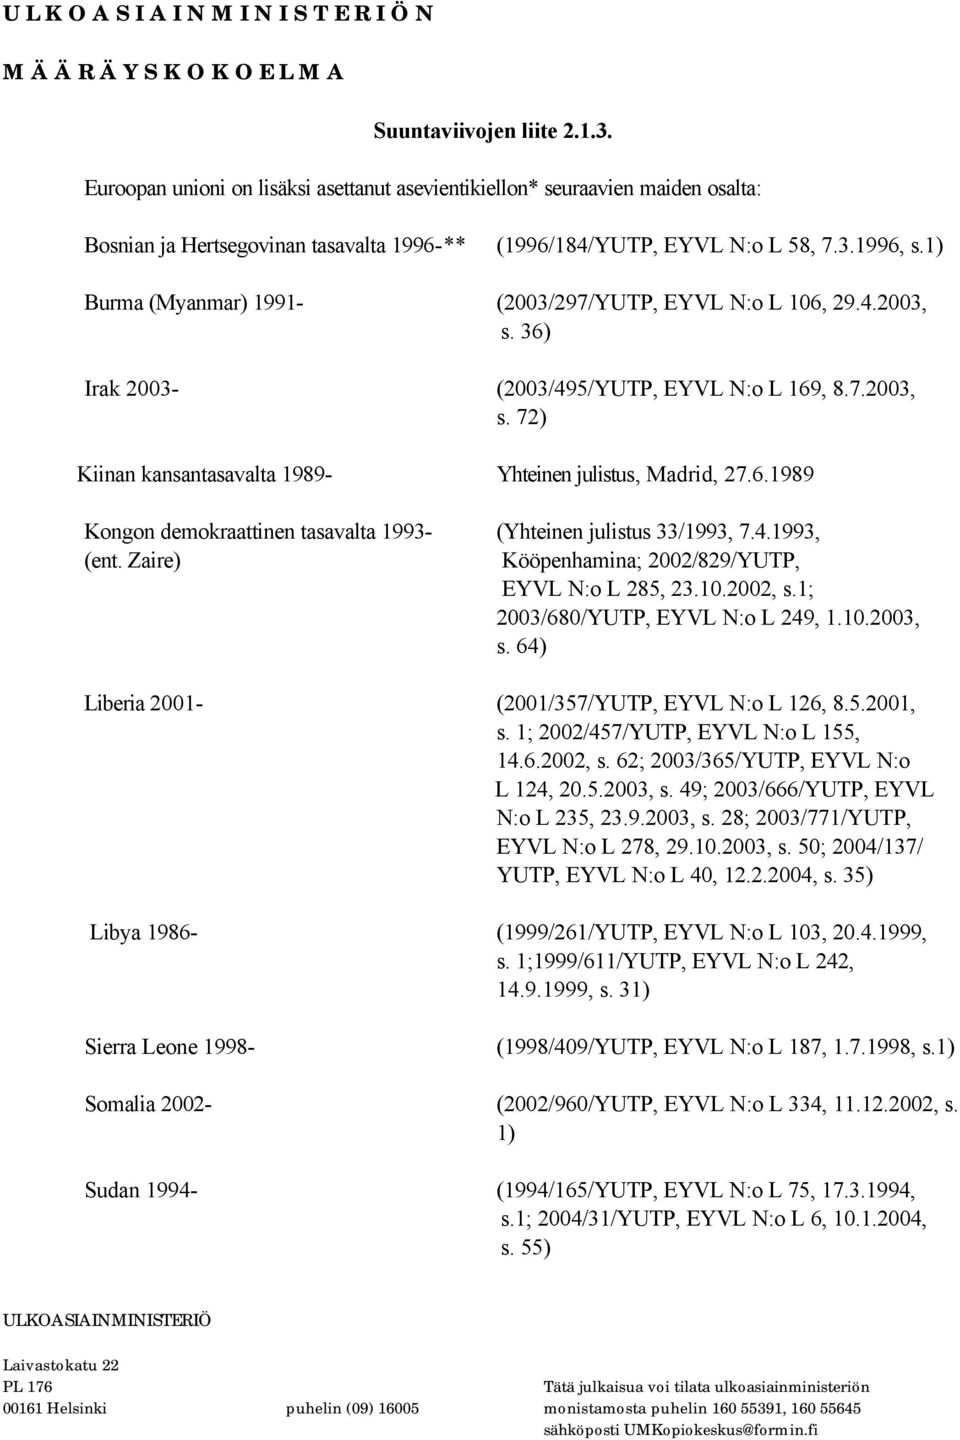 4.1993, (ent. Zaire) Kööpenhamina; 2002/829/YUTP, EYVL N:o L 285, 23.10.2002, s.1; 2003/680/YUTP, EYVL N:o L 249, 1.10.2003, s. 64) Liberia 2001- (2001/357/YUTP, EYVL N:o L 126, 8.5.2001, s.